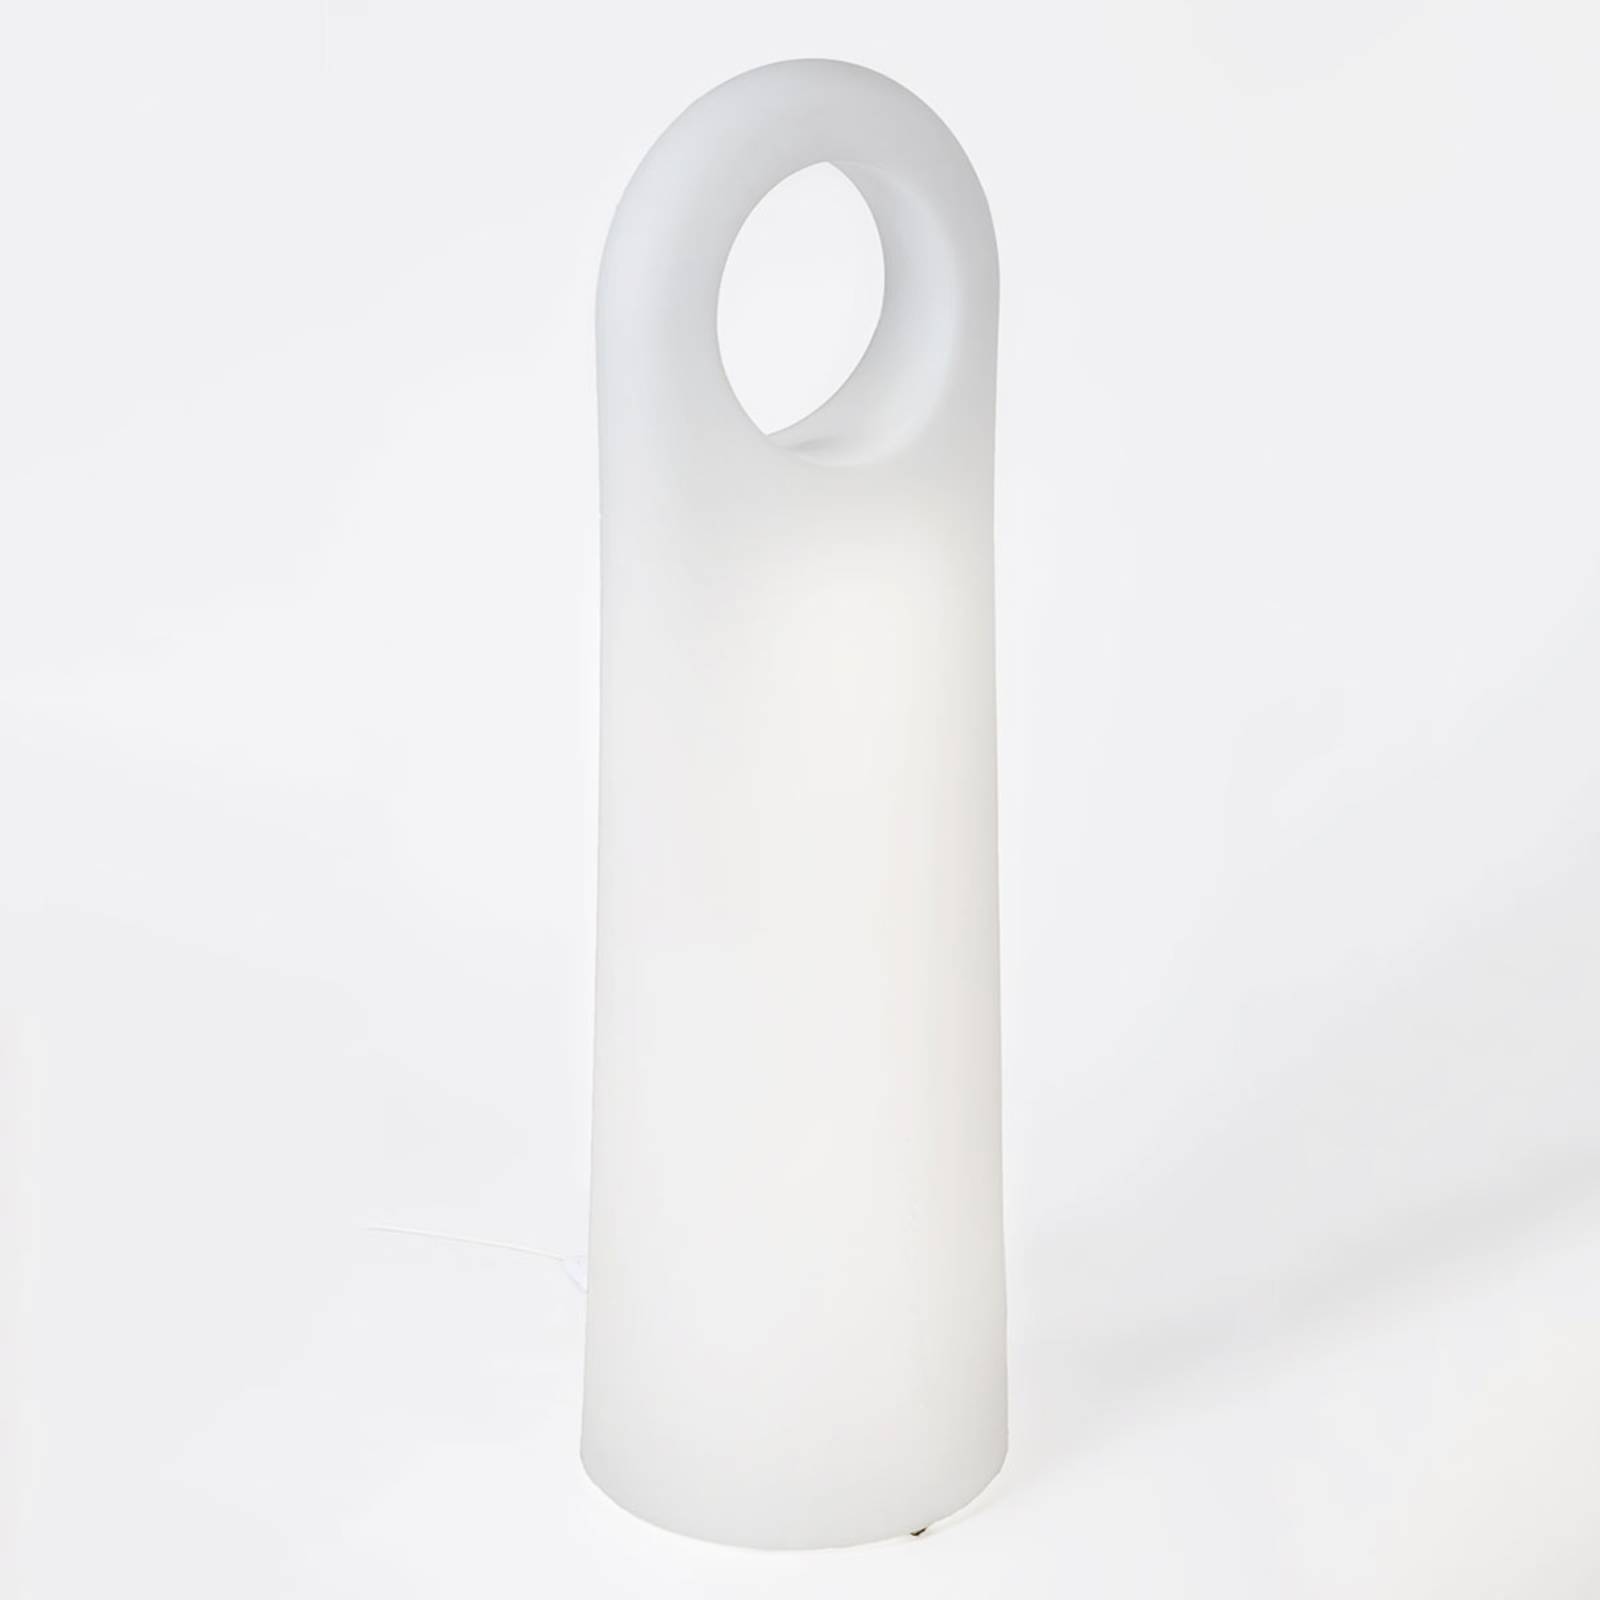 Innolux Origo L lampadaire de designer